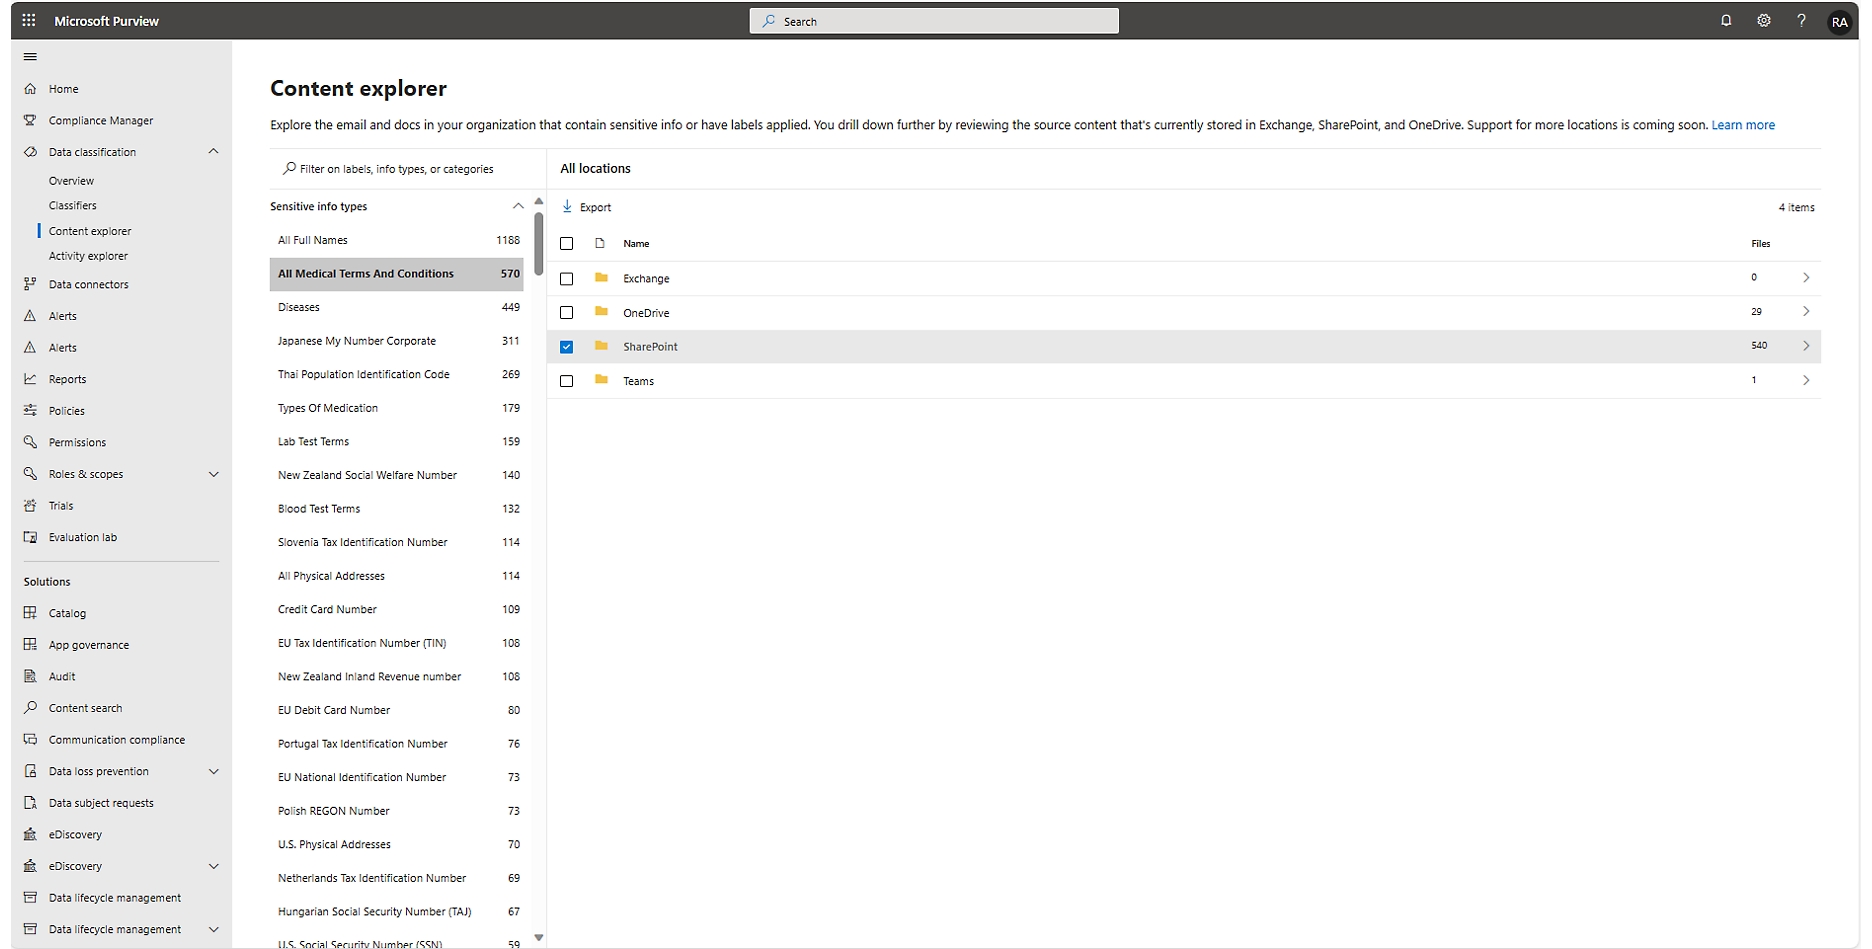 Interfaz del explorador de contenido de Microsoft Purview que muestra resultados filtrados de información confidencial en varios documentos